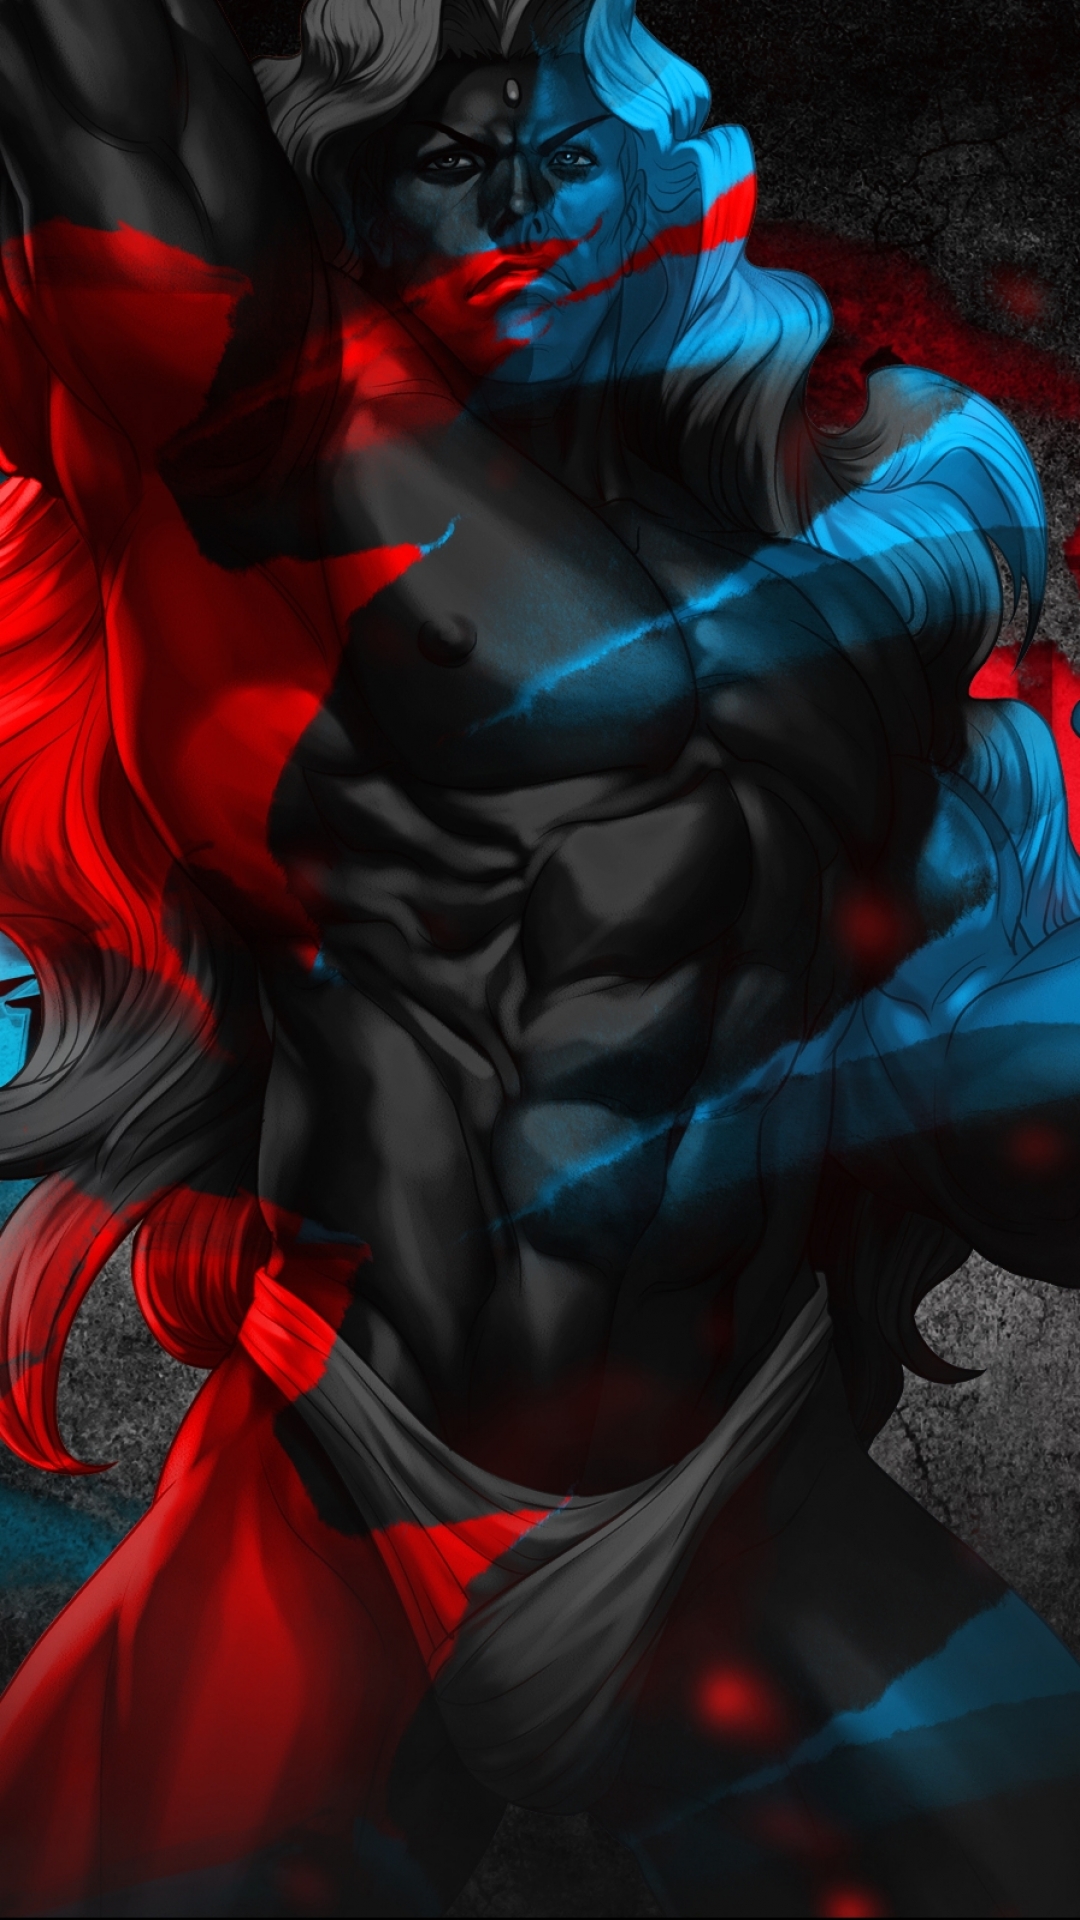 luchador callejero fondo de pantalla para iphone,azul,rojo,cg artwork,personaje de ficción,diseño gráfico